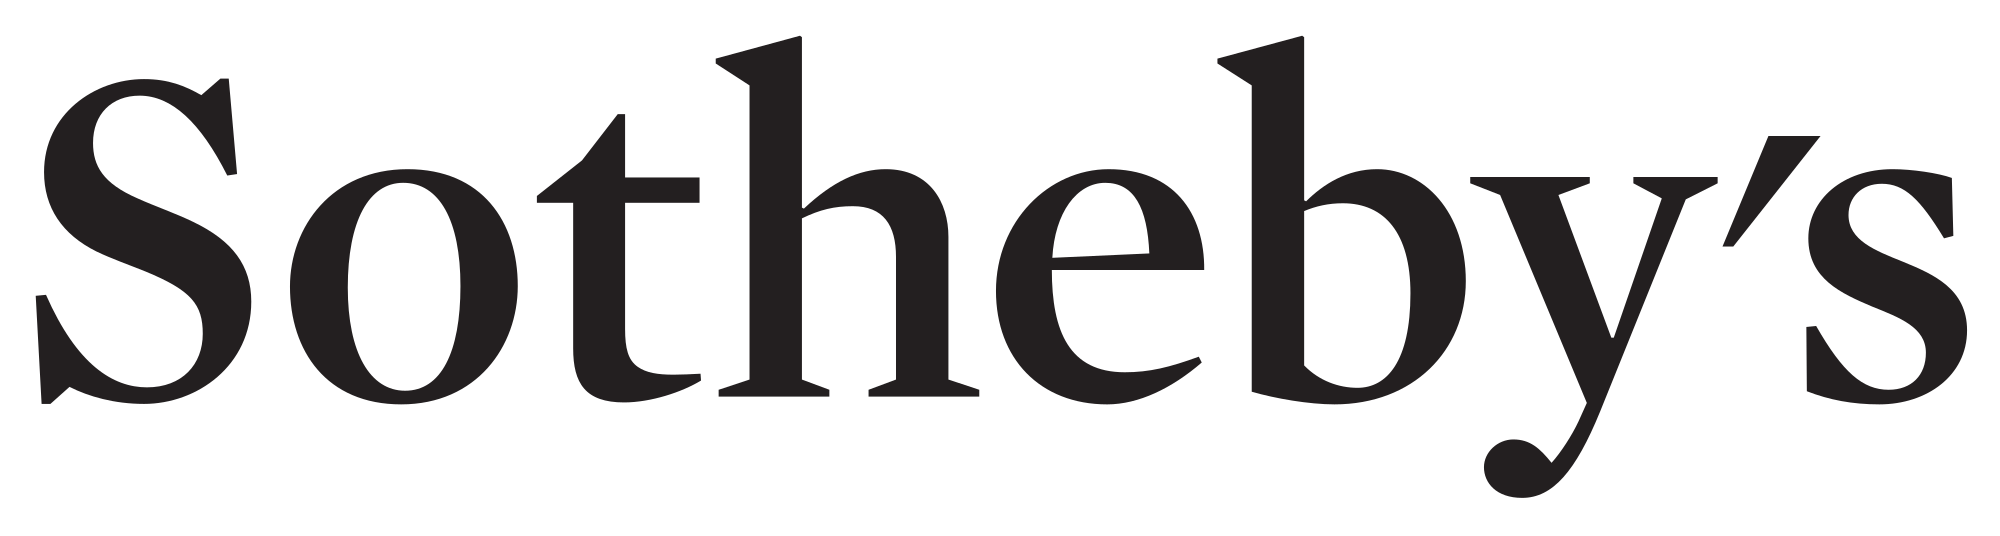 Sothebys_Logo.png